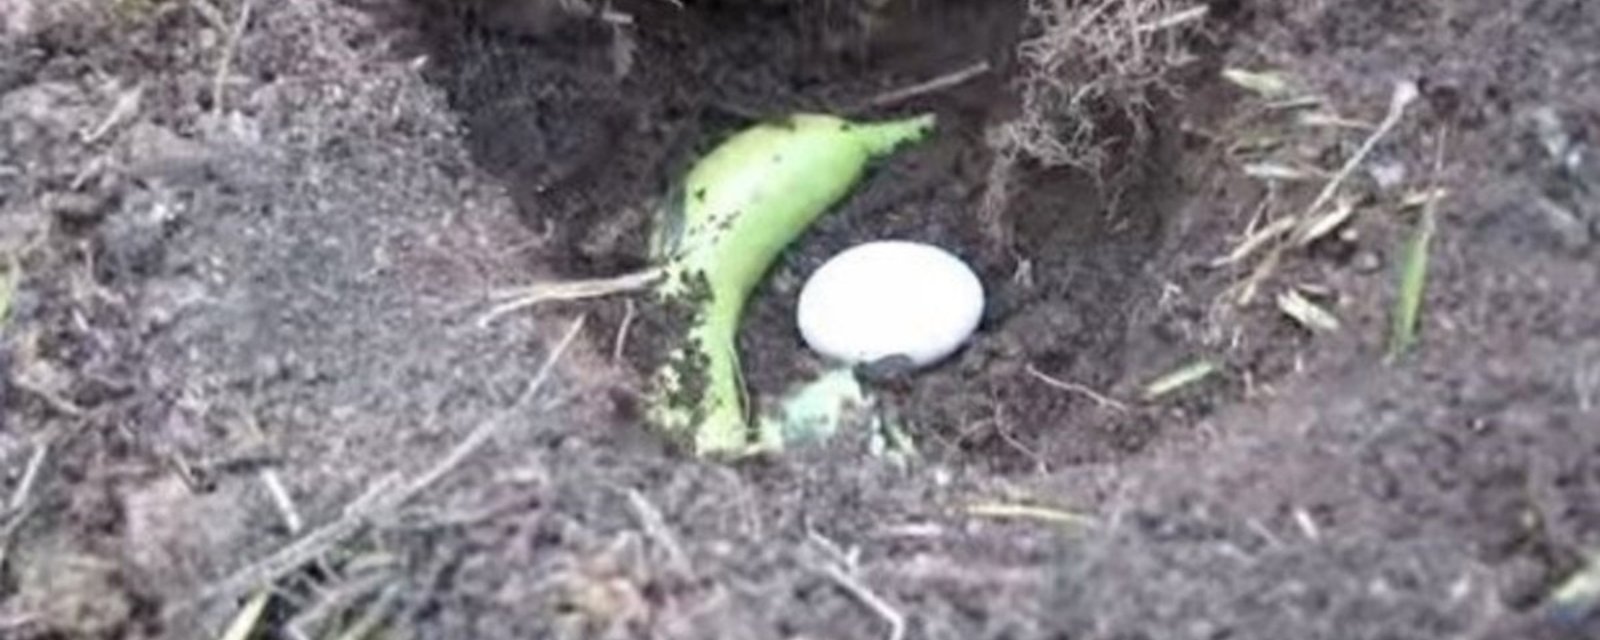 Il met une banane et un œuf dans un trou dans le sol: ce qui se produit est fantastique!